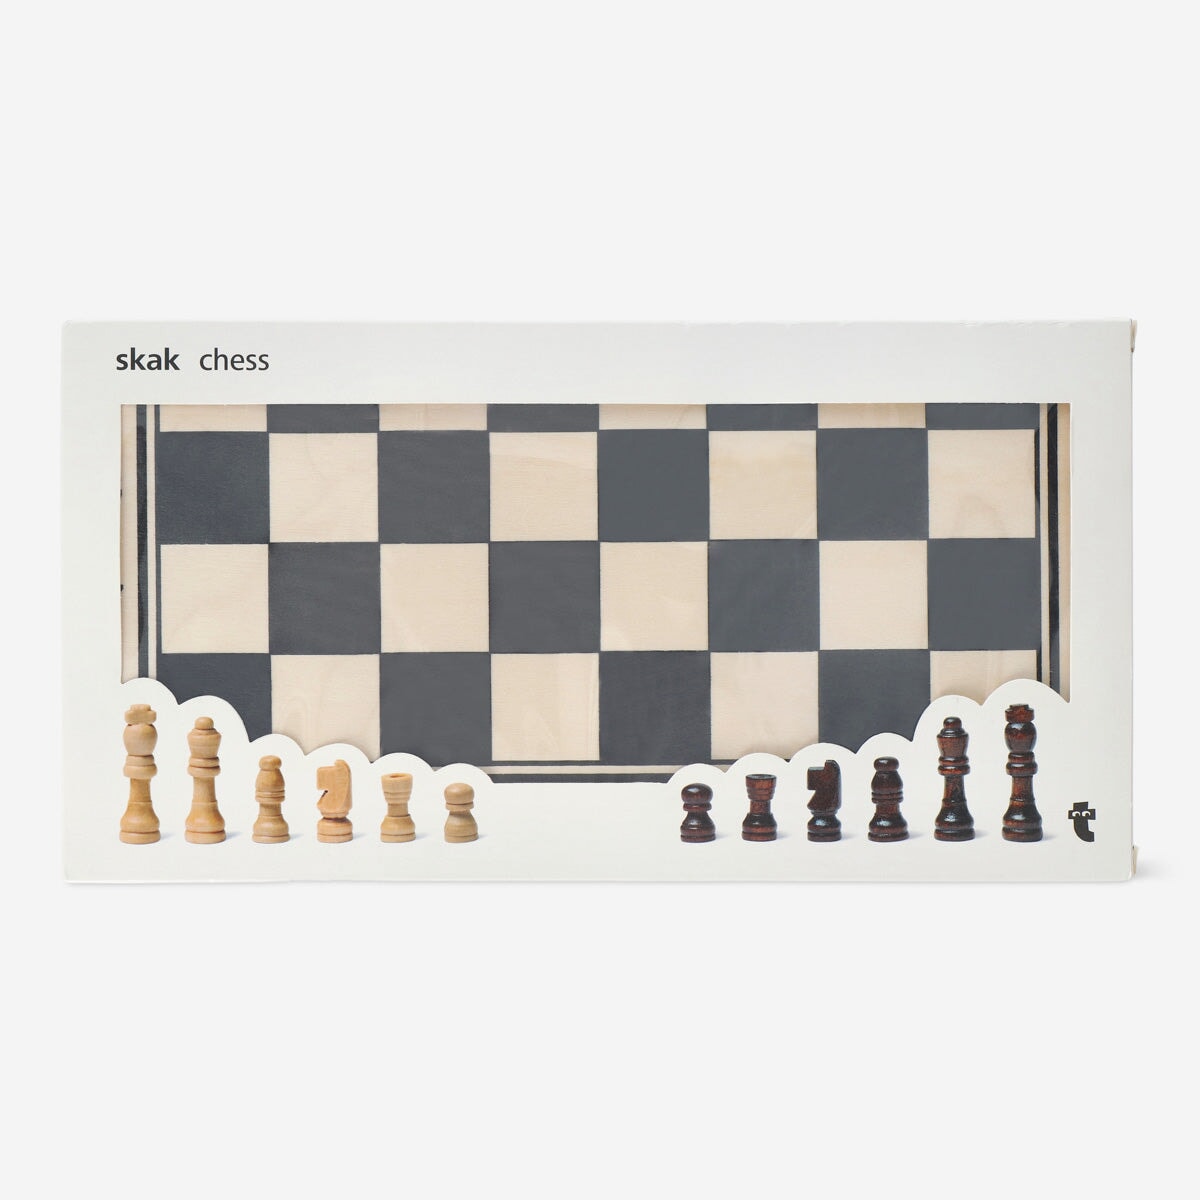 Xadrez - Como jogar, regras e jogadas - Cola da Web